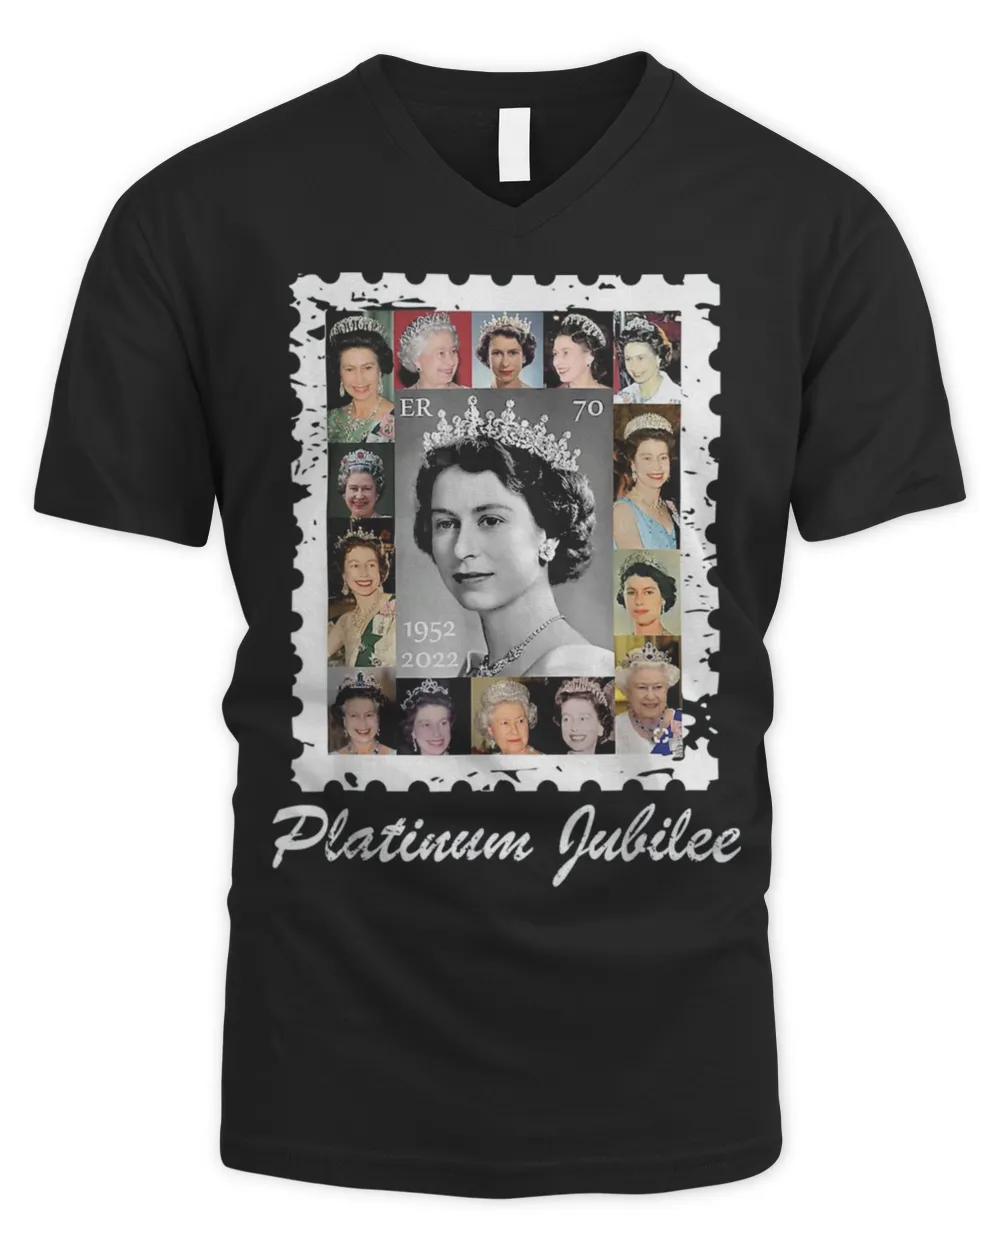 Queen Elizabeths Platinum Jubilee 70 years Celebration 2022 Shirt